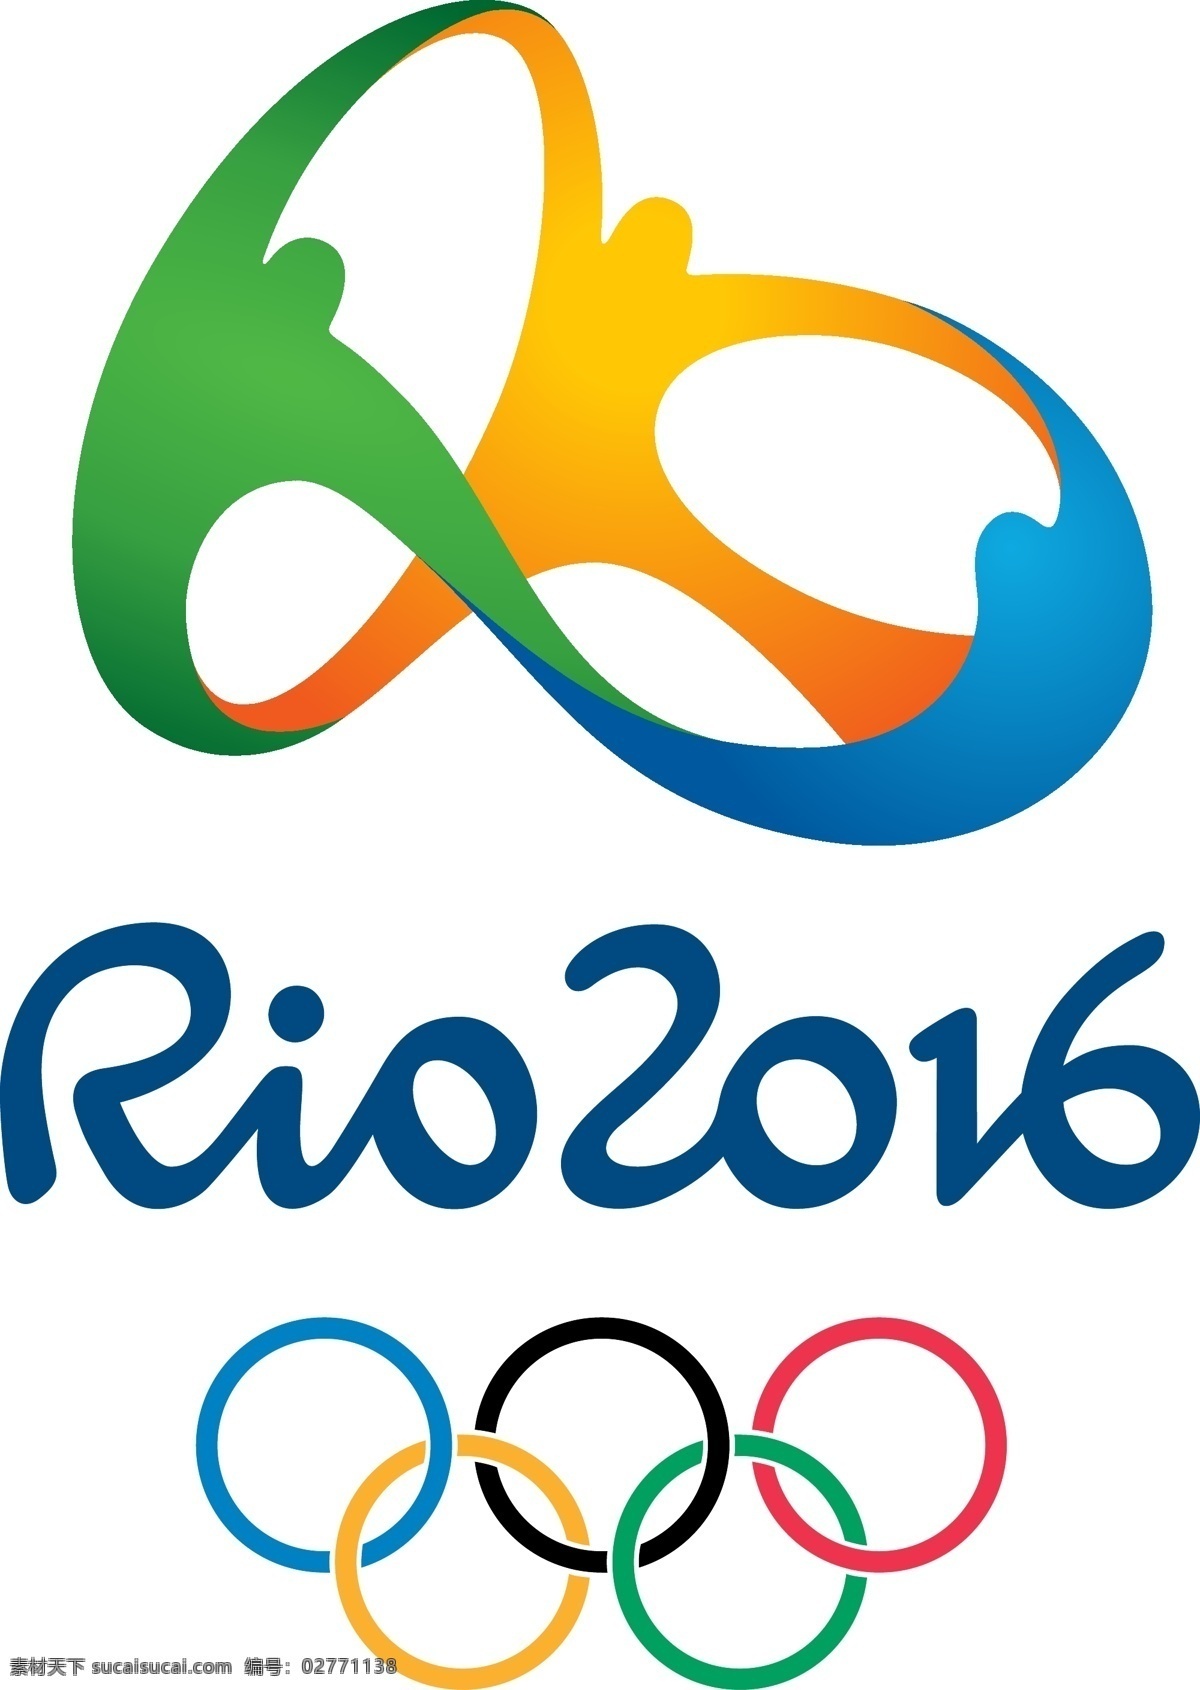 里约热内卢 2016 奥运会 会徽 随着 申奥 标志 官方 高清 壁纸 视频 标识 奥林匹克标志 标志的奥运会 奥运会申办 申办 申办标志 标识的官员 官员 壁纸视频 西班牙 力 拓 矢量图 建筑家居